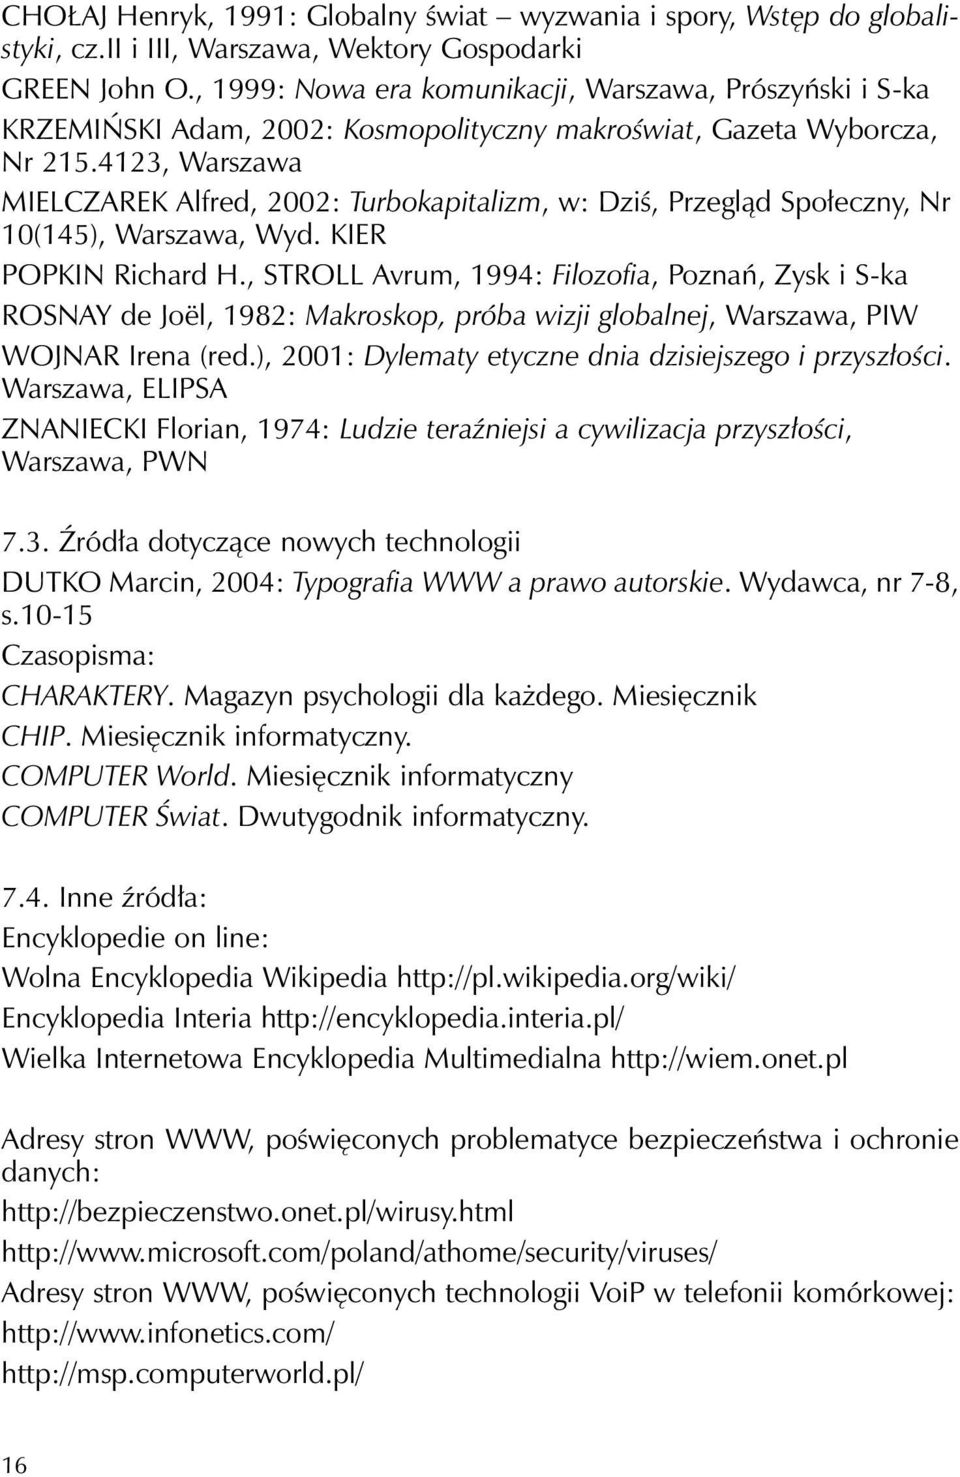 4123, Warszawa MIELCZAREK Alfred, 2002: Turbokapitalizm, w: Dziś, Przegląd Społeczny, Nr 10(145), Warszawa, Wyd. KIER POPKIN Richard H.